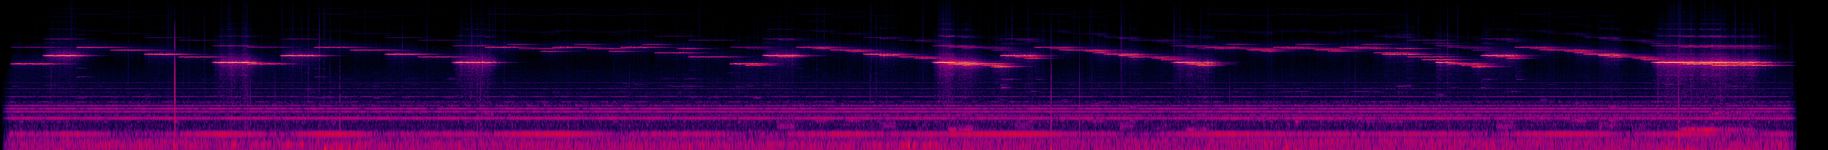 Celestial Cantabile - Spectrogram.jpg